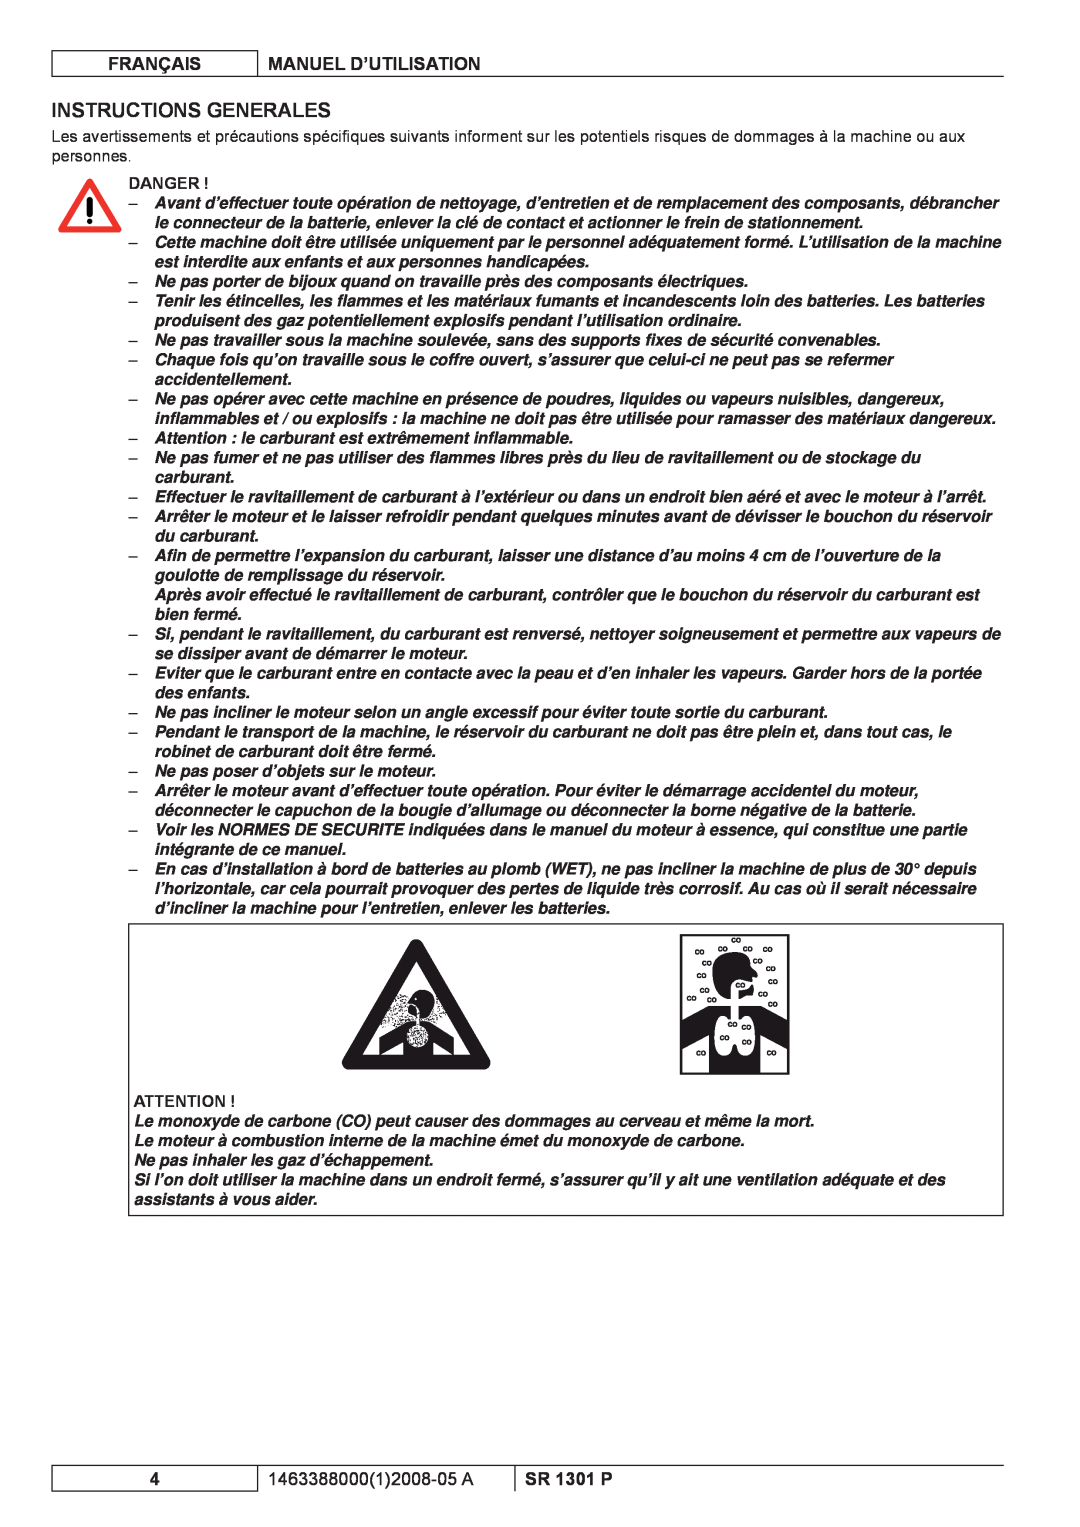 Nilfisk-ALTO SR 1301 P Instructions Generales, Français, Manuel D’Utilisation, 146338800012008-05 A, Danger 